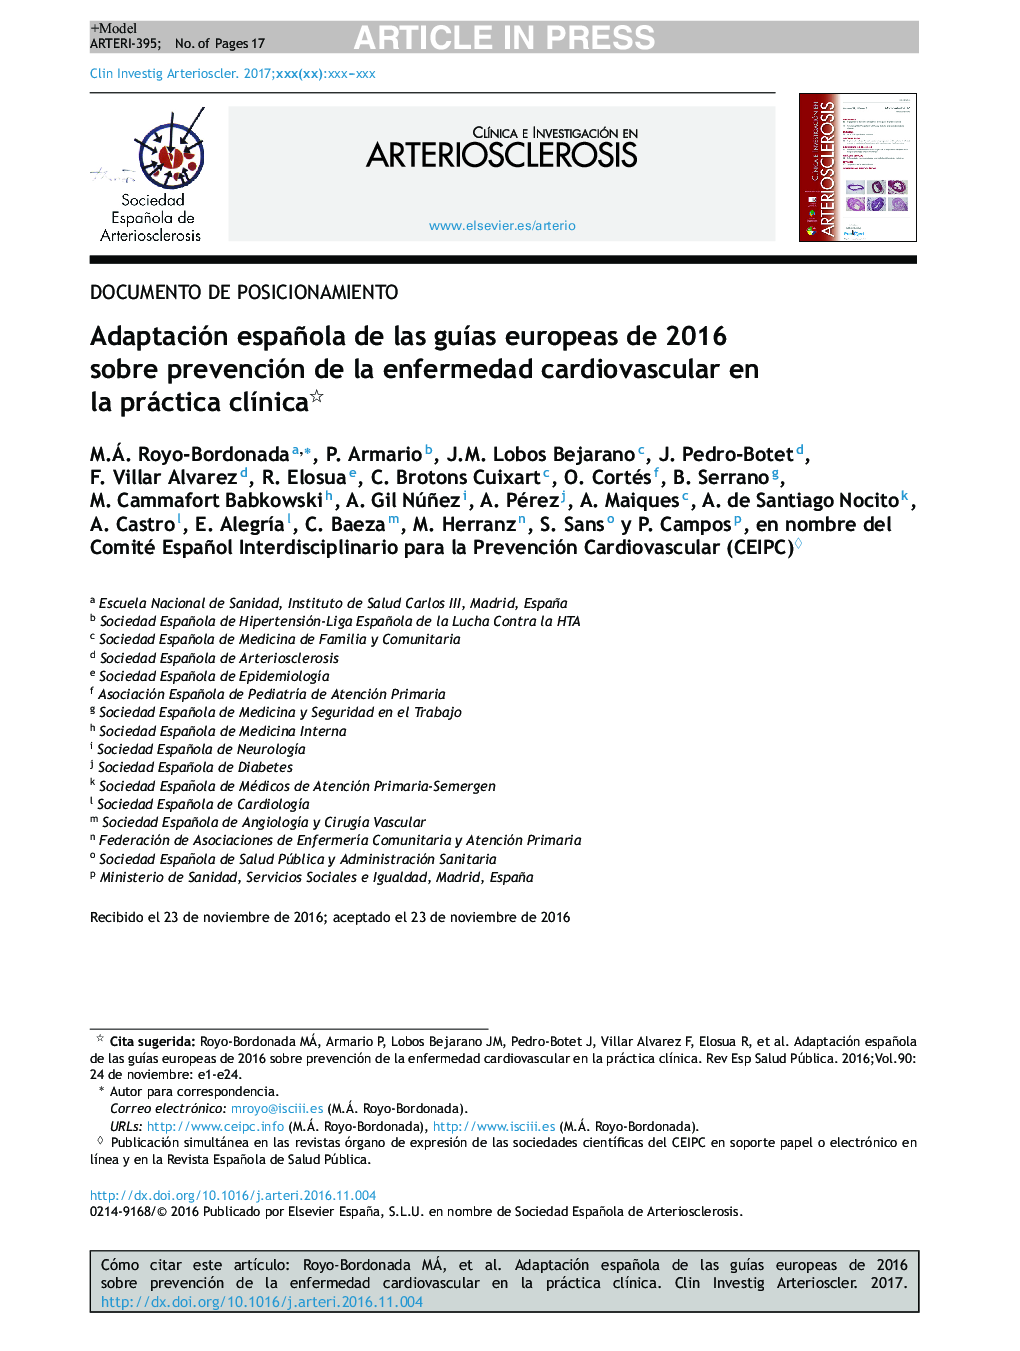 سازگاری اسپانیایی + - دستورالعمل های اروپایی 2016 در مورد پیشگیری از بیماری های قلبی عروقی در عمل بالینی - بالینی 